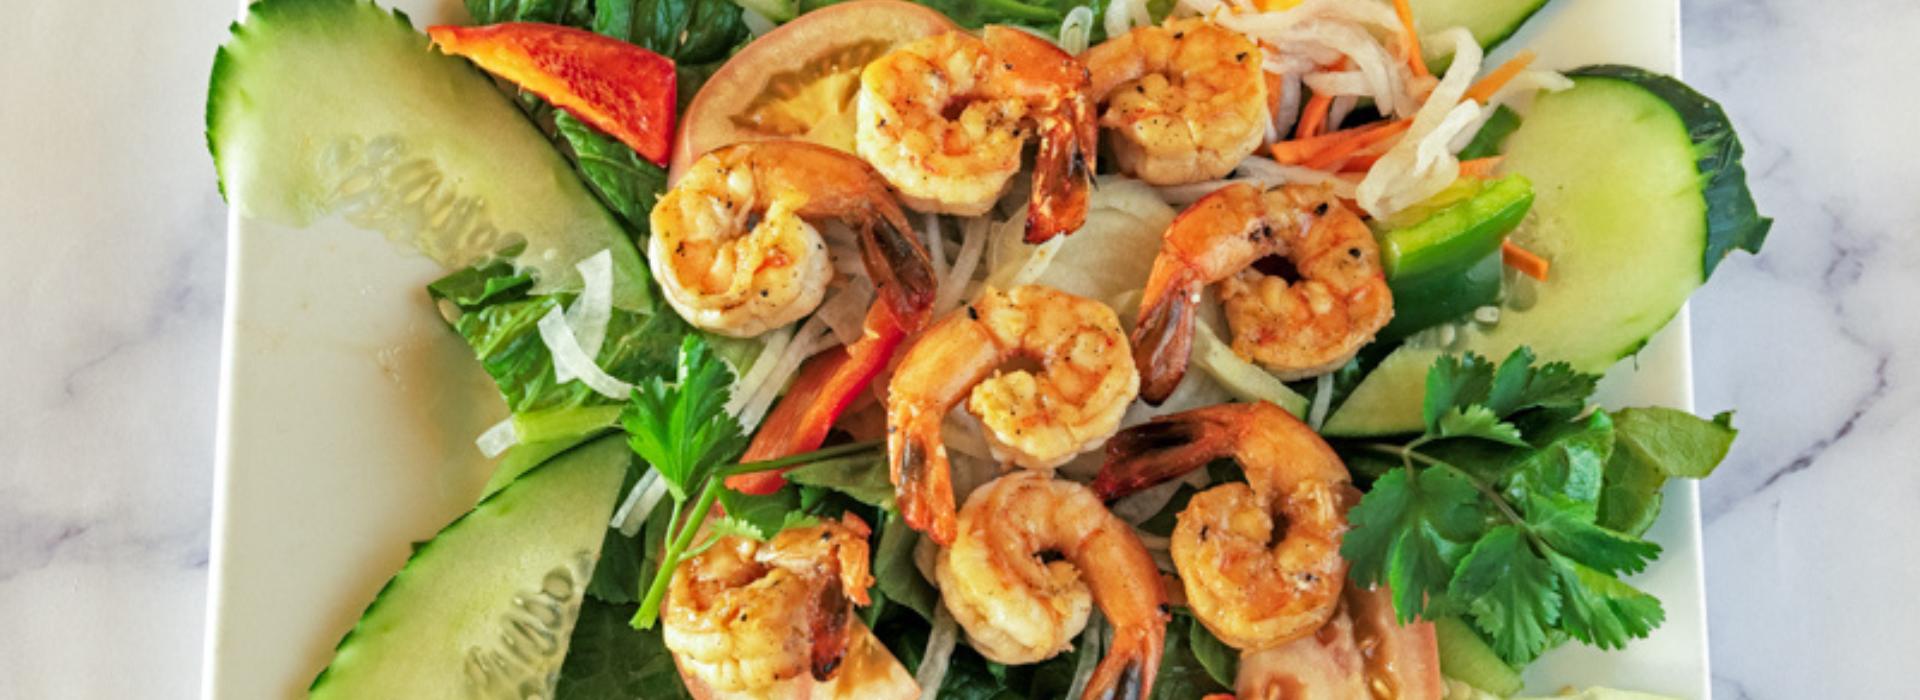 Vietnamese Appetizers | Best Restaurants In Merrifield VA